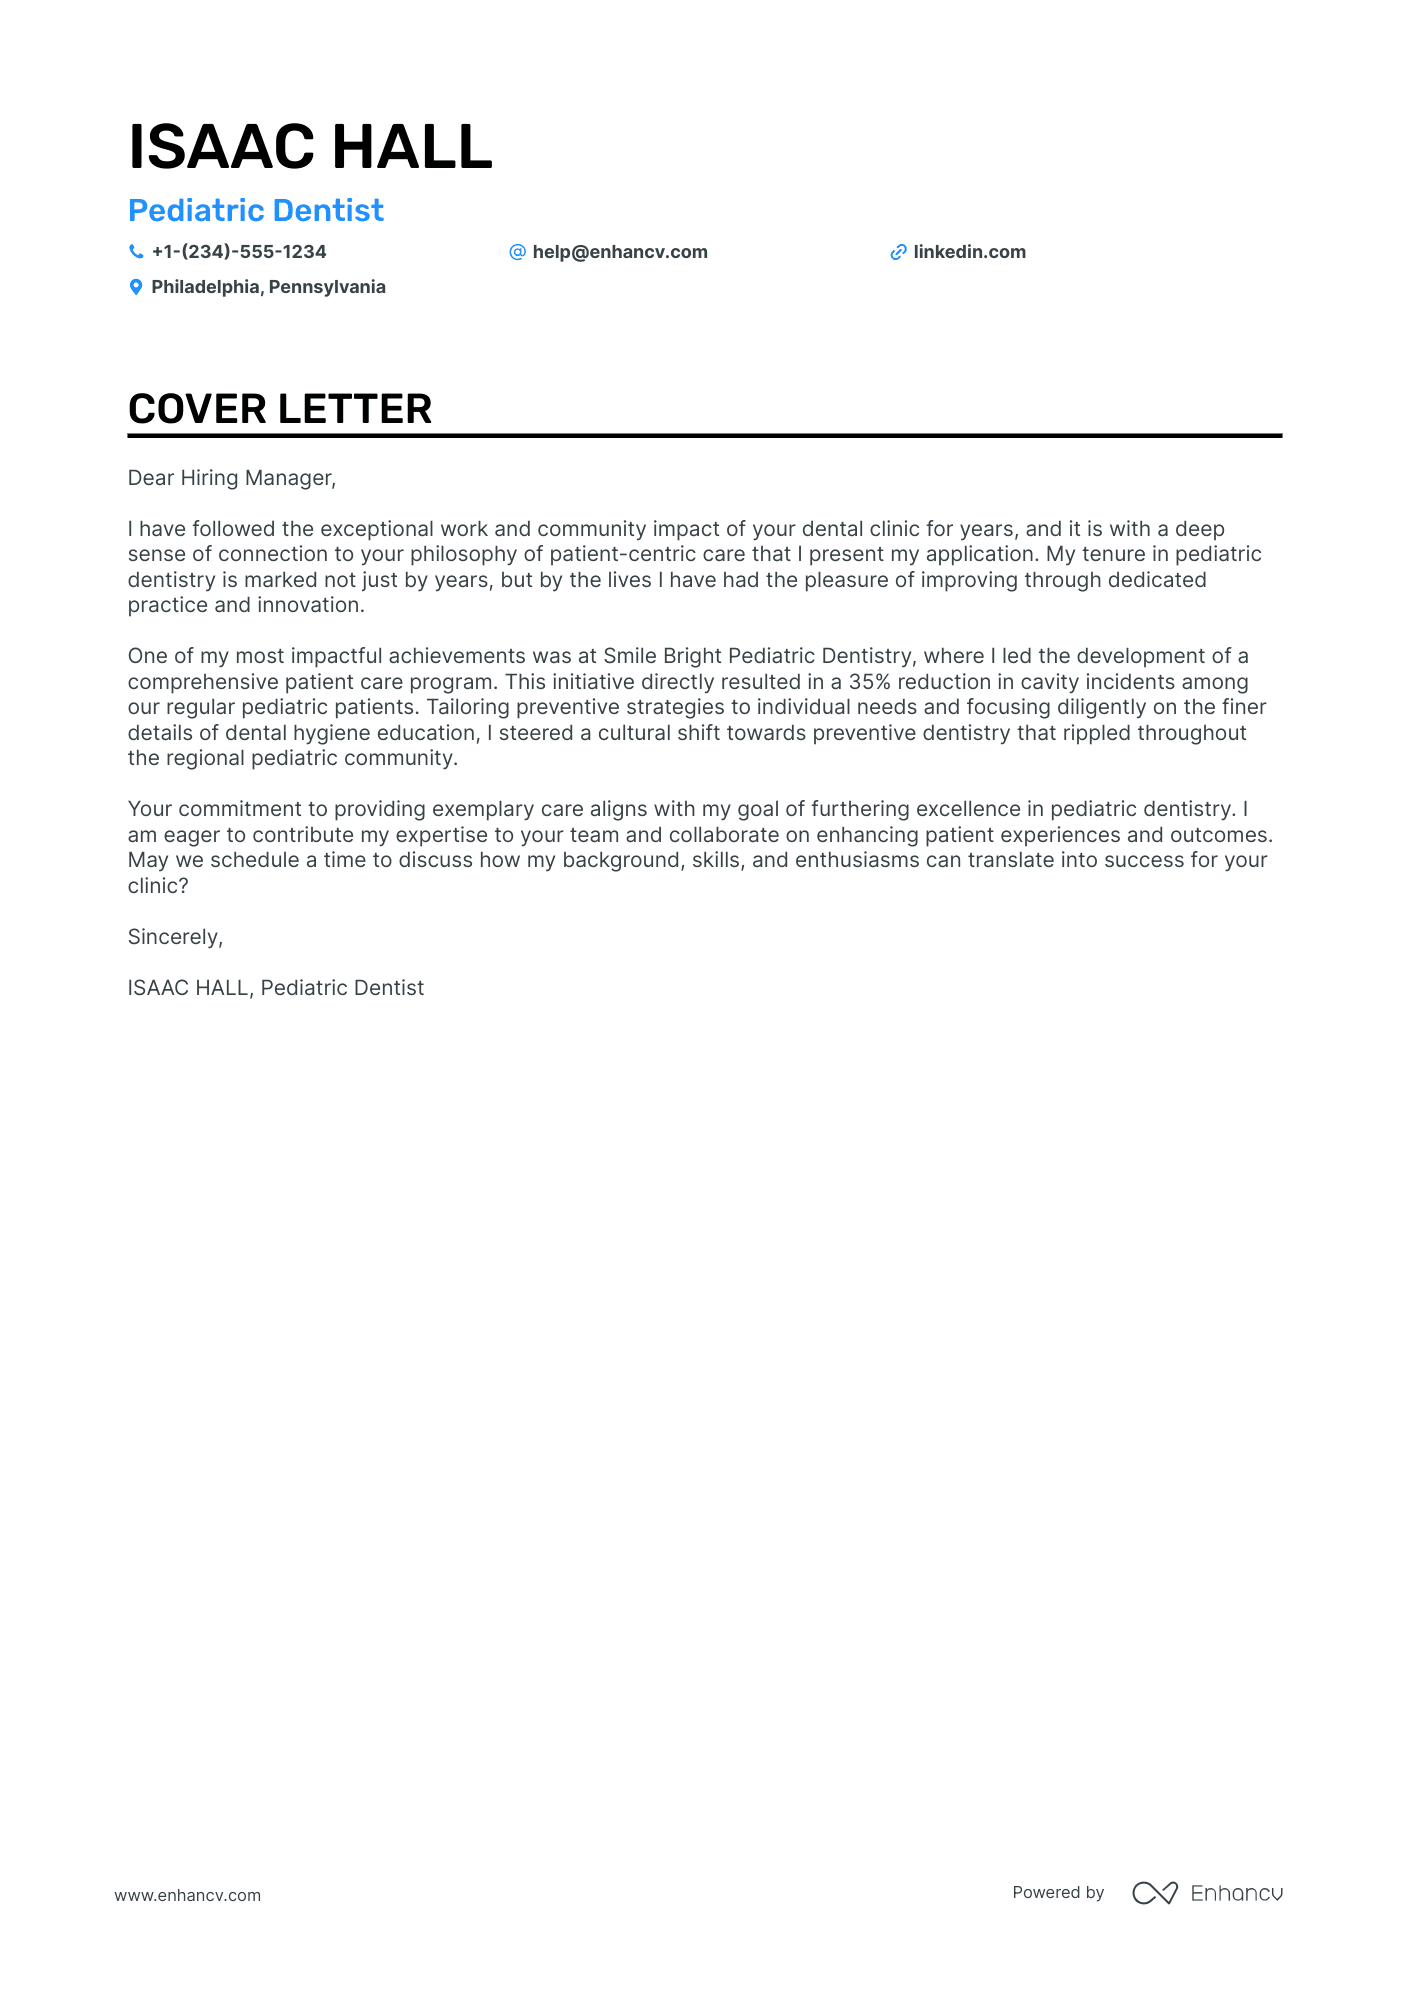 cover letter for dental position